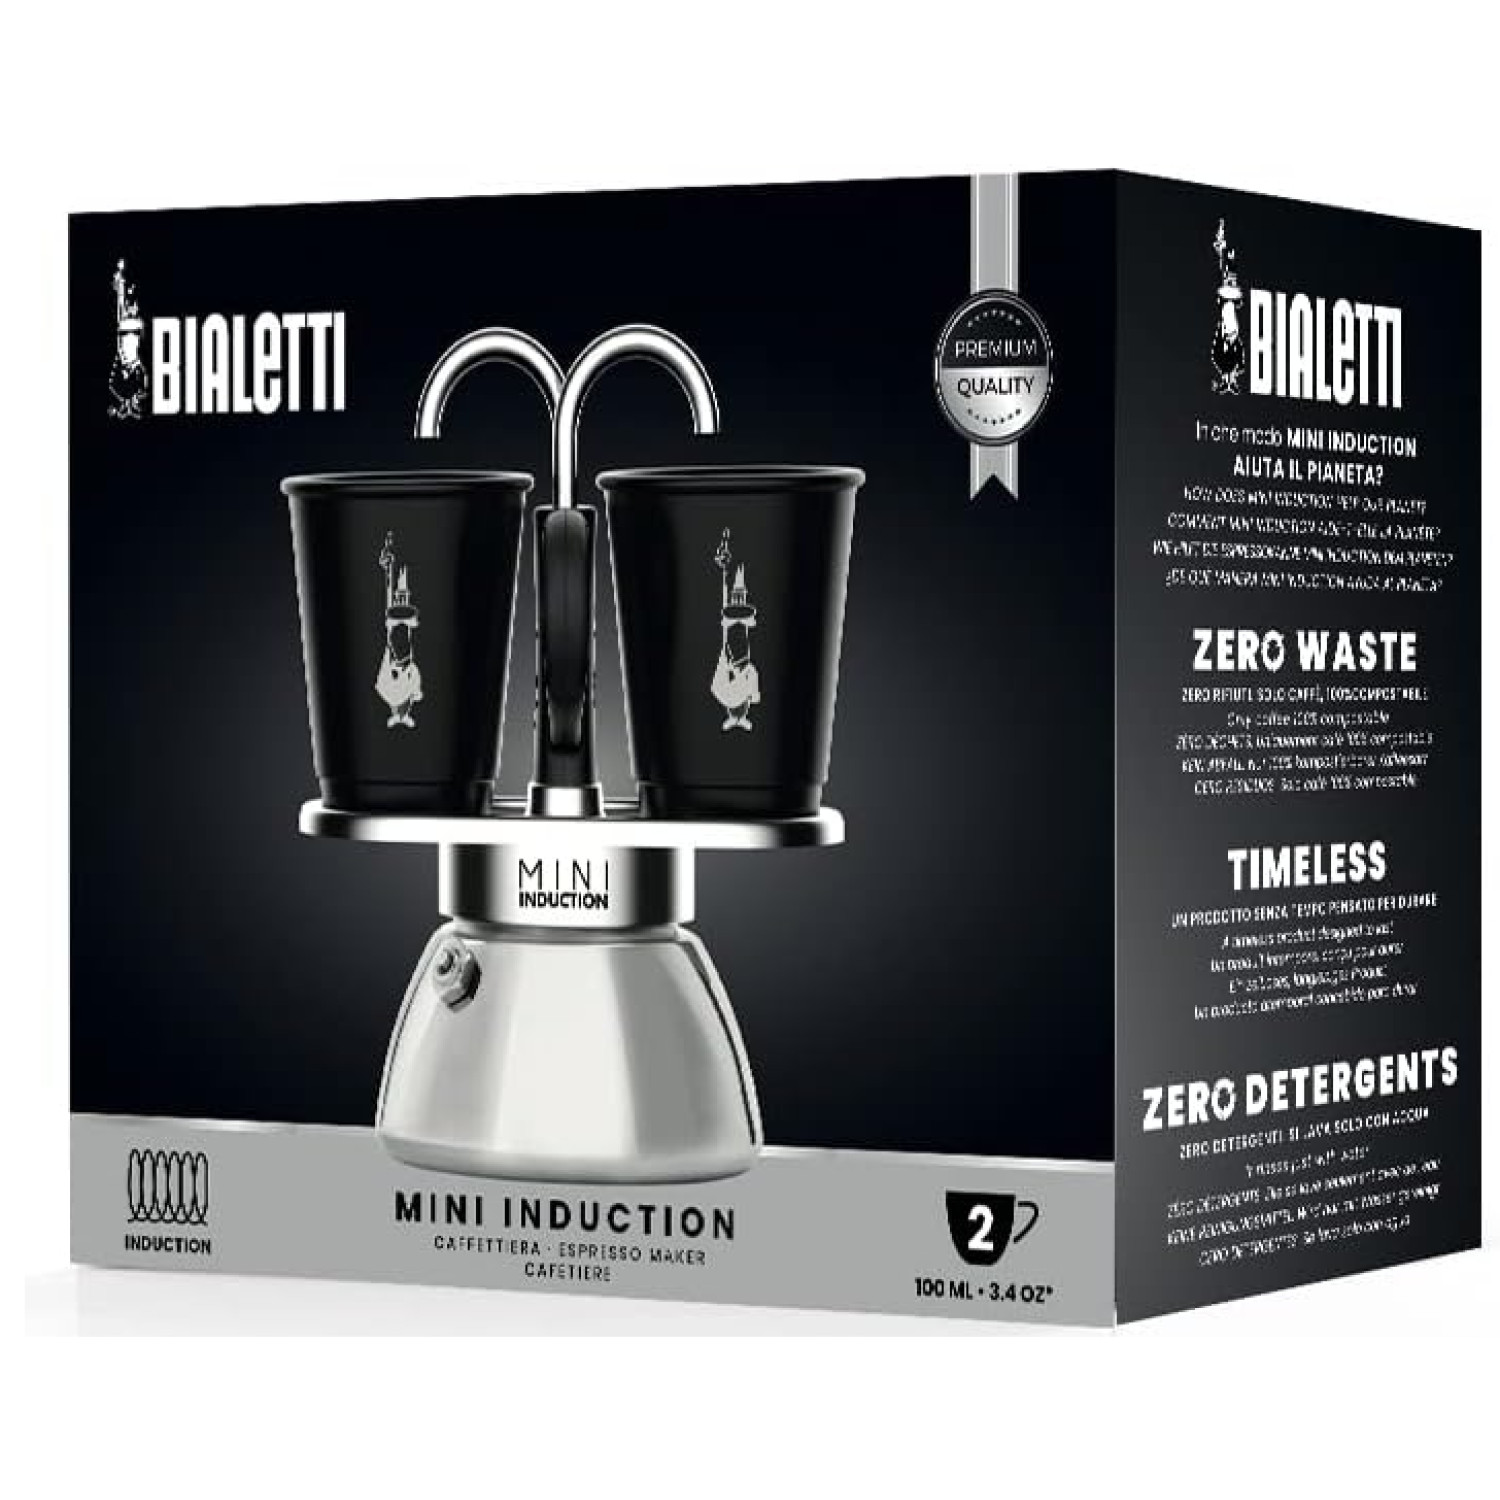 2 Tassen Espressokocher BIALETTI Set Schwarz/Silber Mini Induction für BLACK